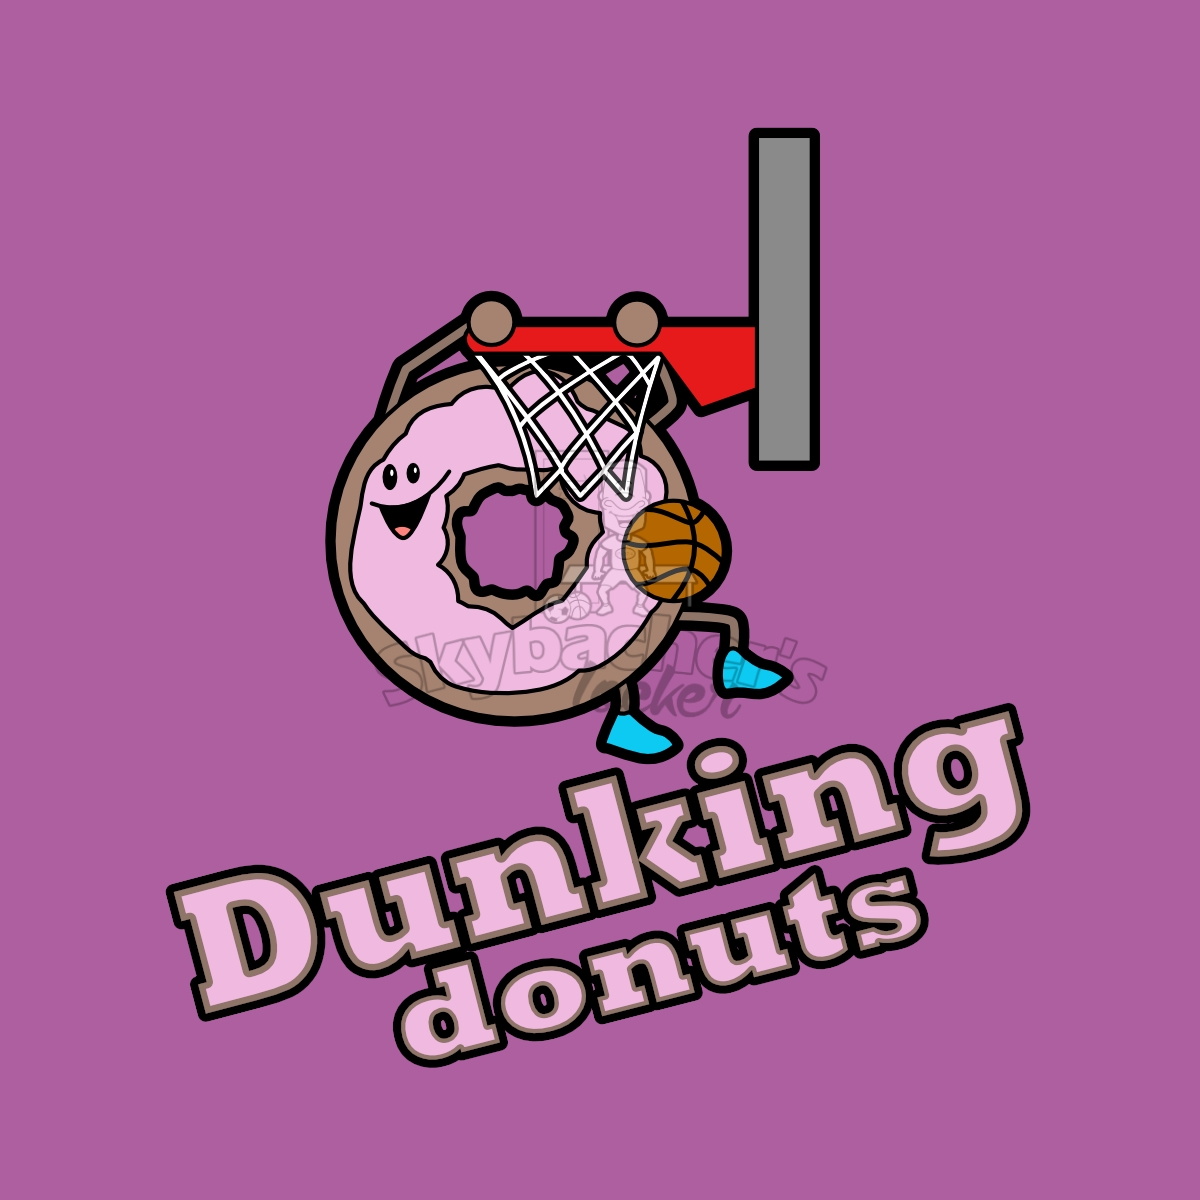 Dunking donut basketball logo